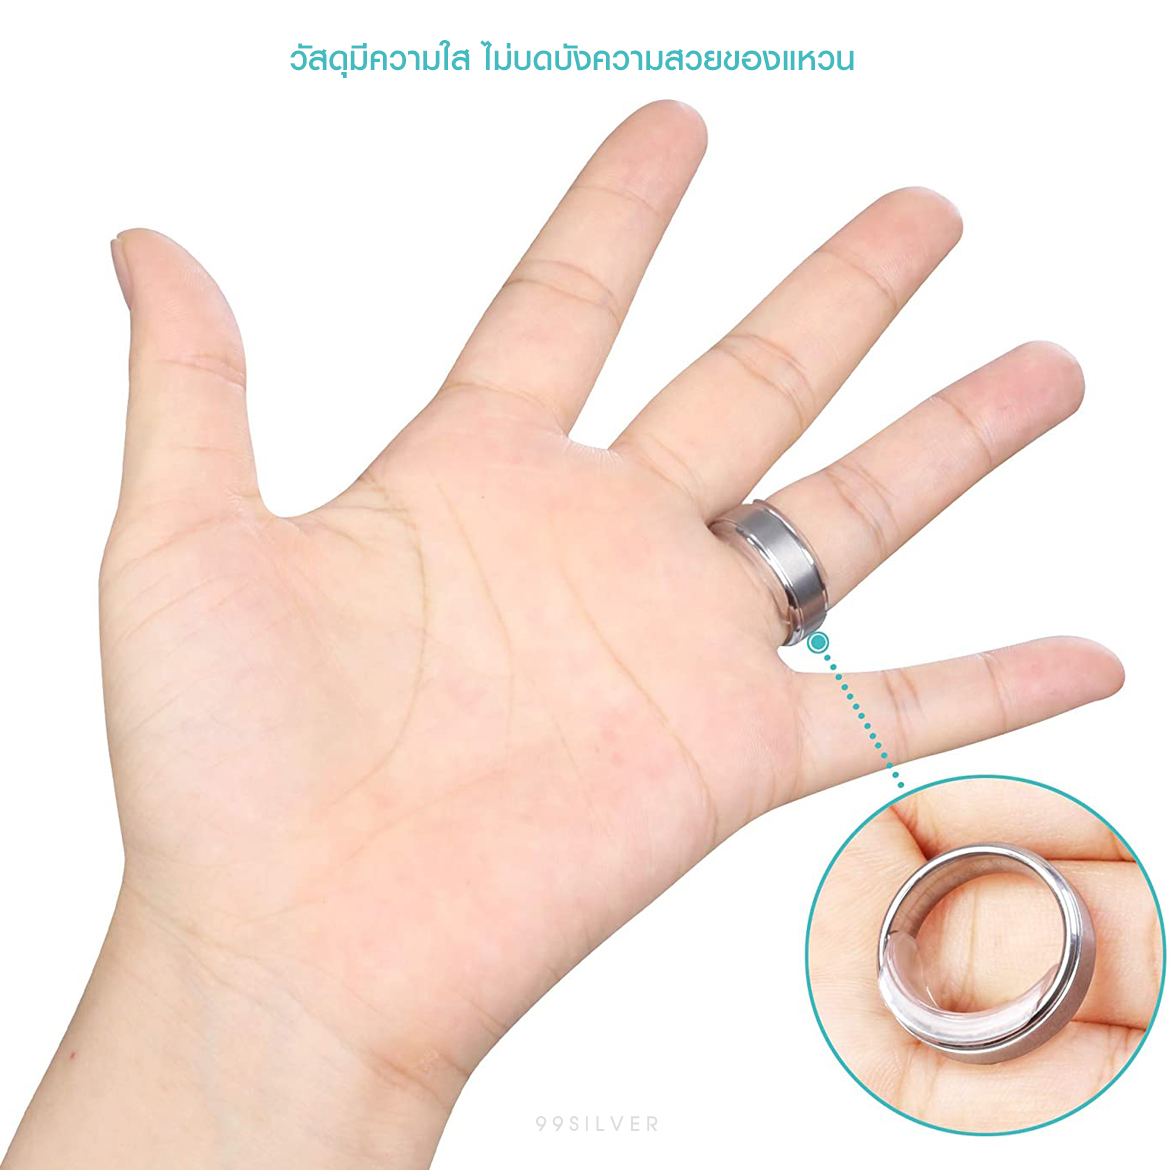 ซิลิโคนยางสำหรับ ย่อขนาดแหวน สำหรับก้านแหวนตั้งแต่ 1 - 10 มิลลิเมตร แบบใส